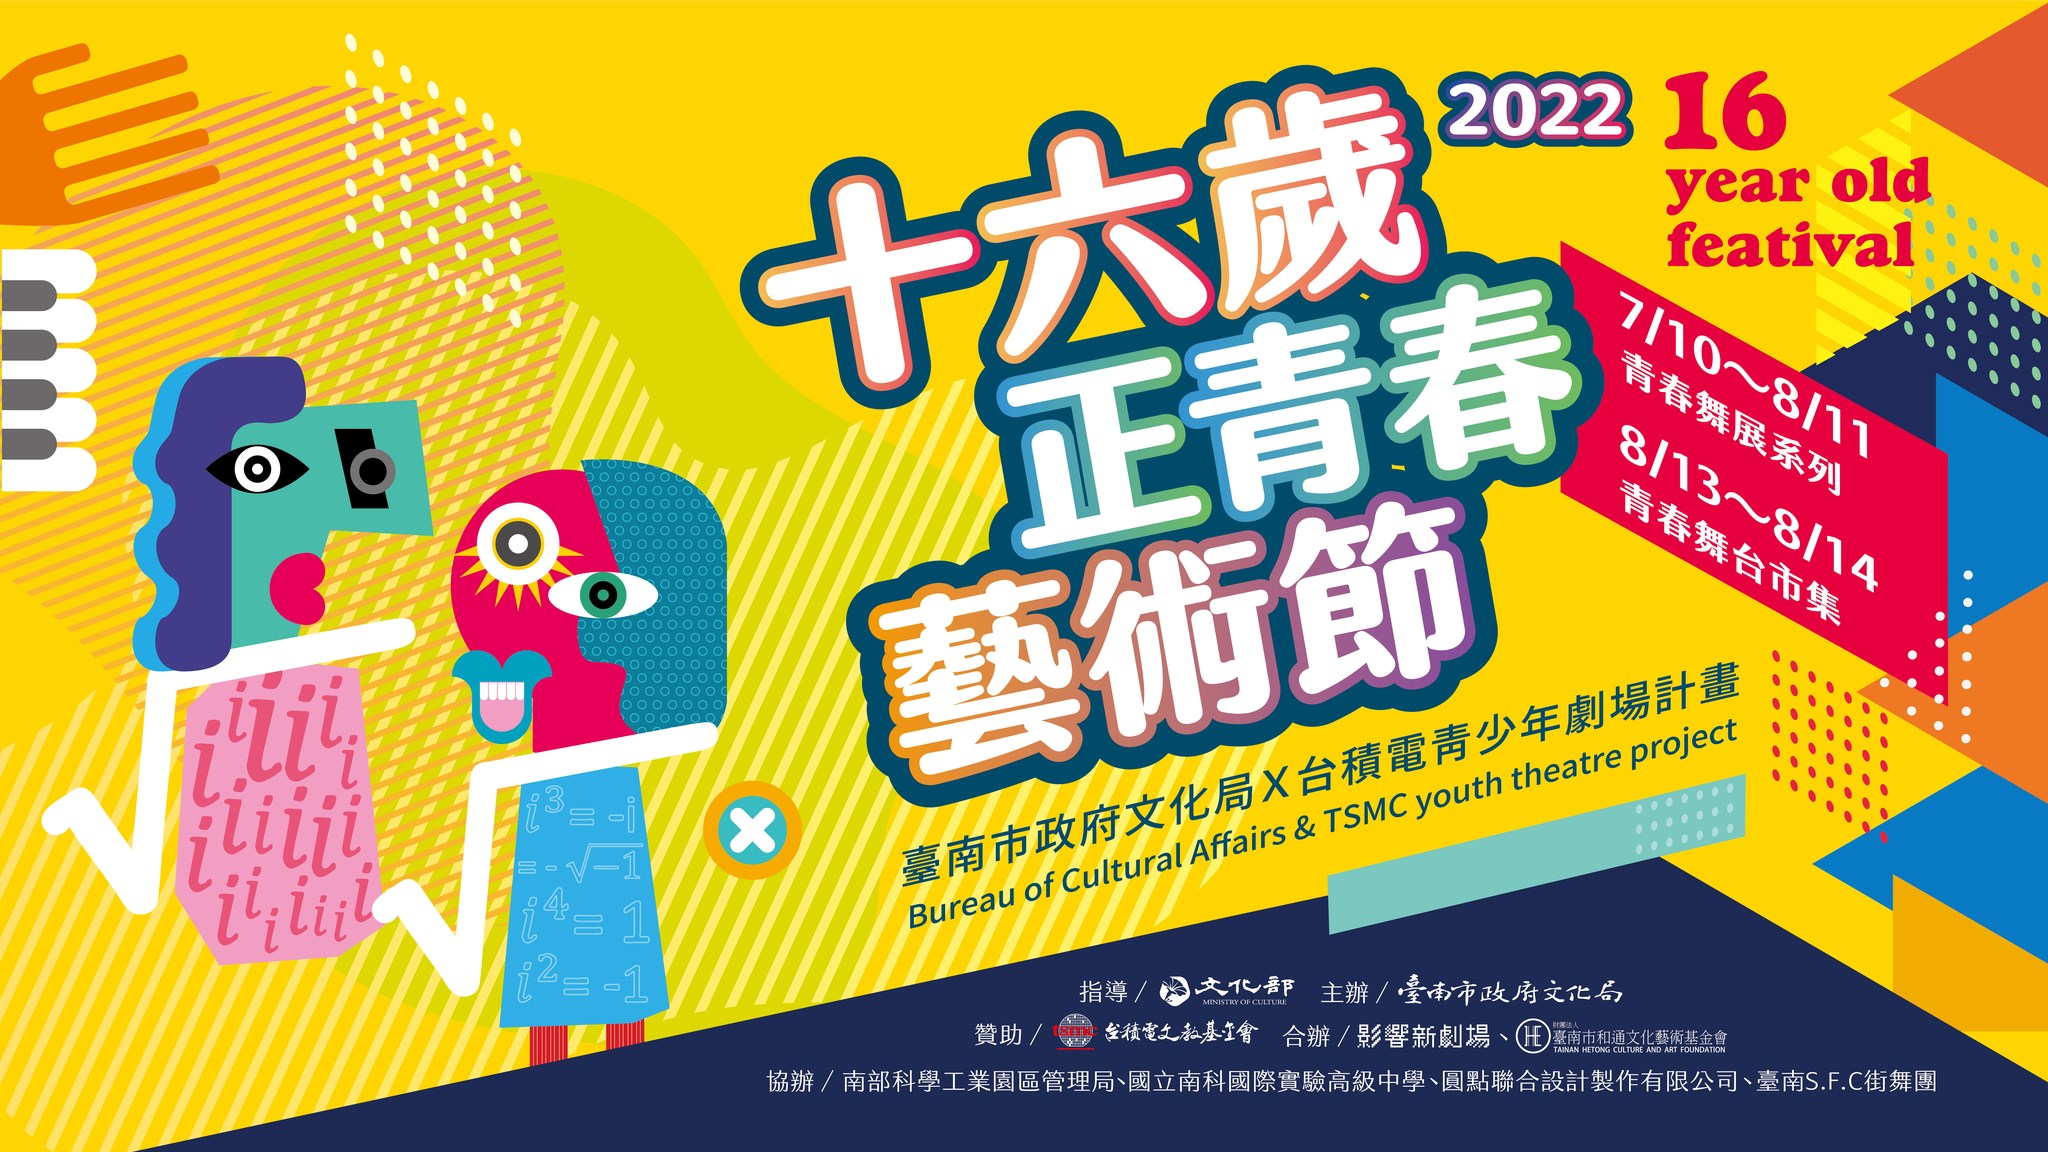 2022十六歲正青春藝術節-臺南文化中心 x 台積電青少年劇場計畫